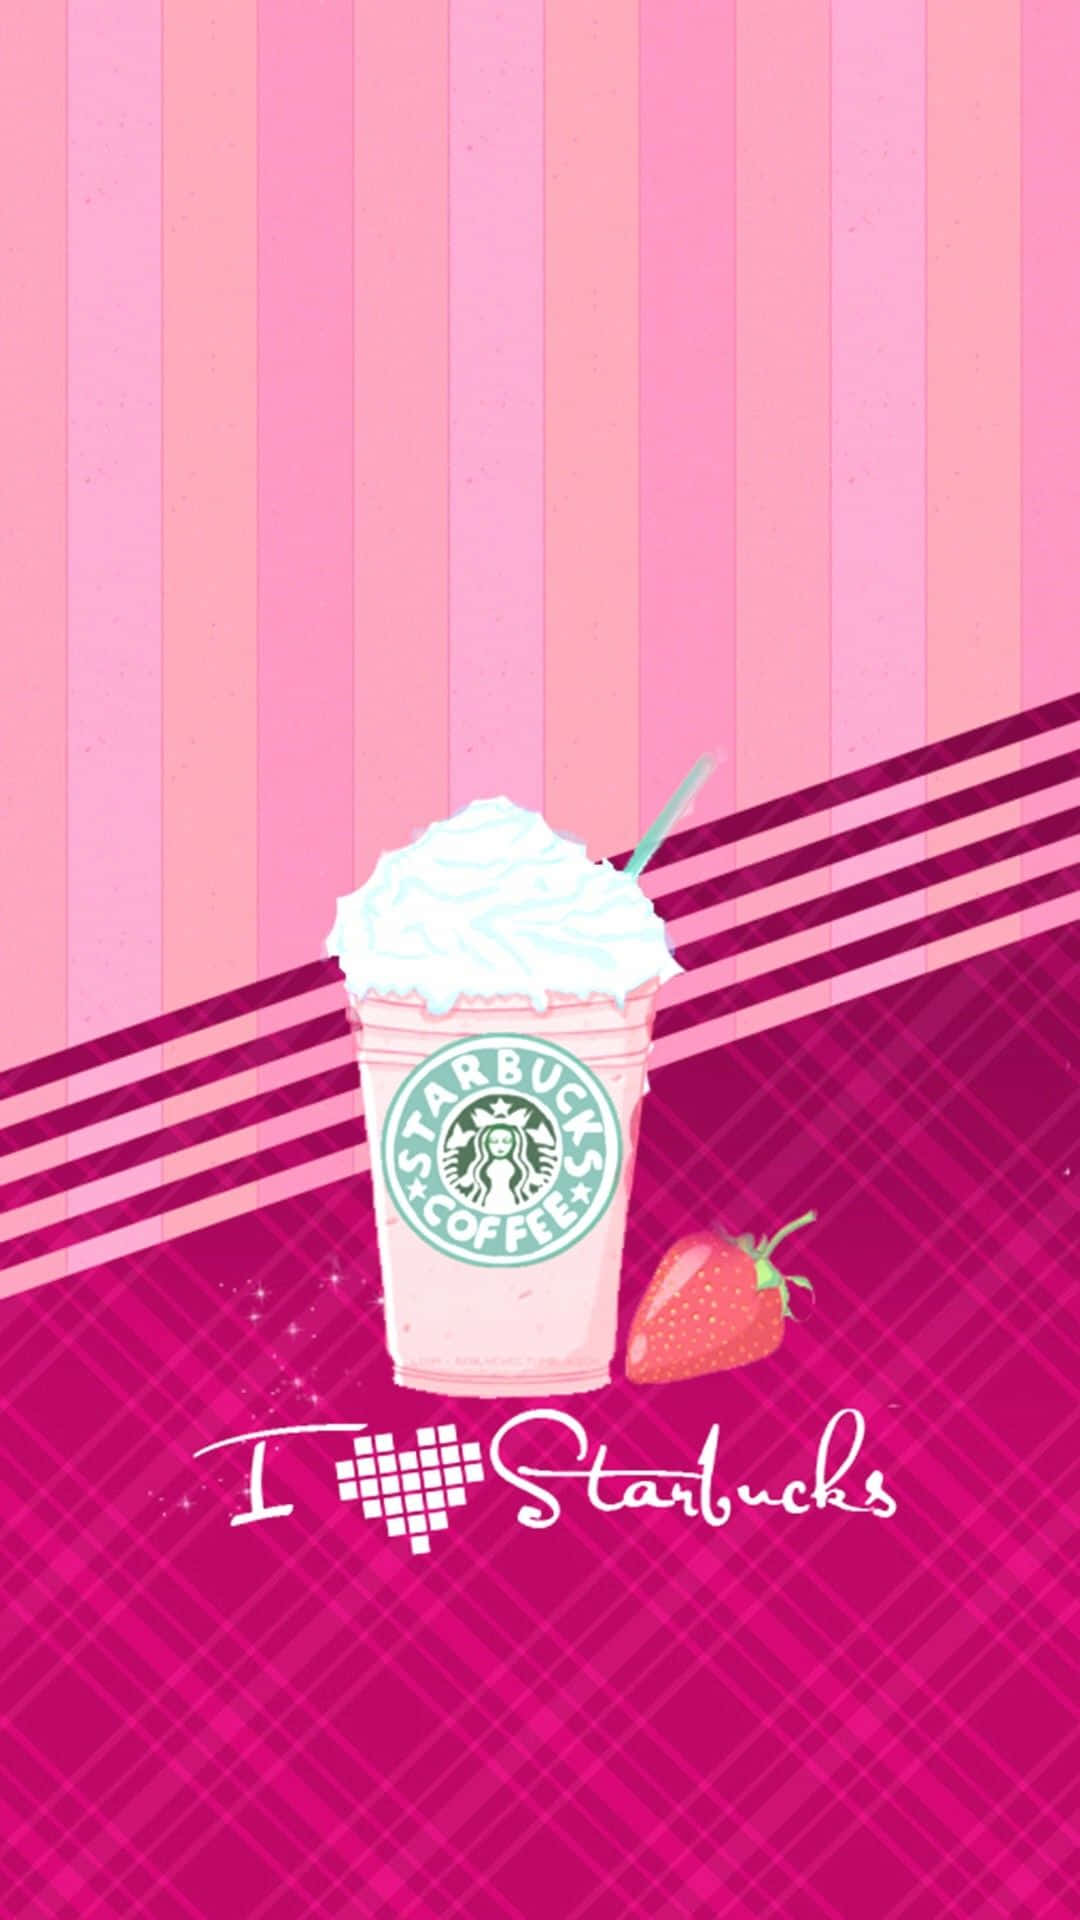 Rosaerdbeer Starbucks Girly Tumblr. Wallpaper